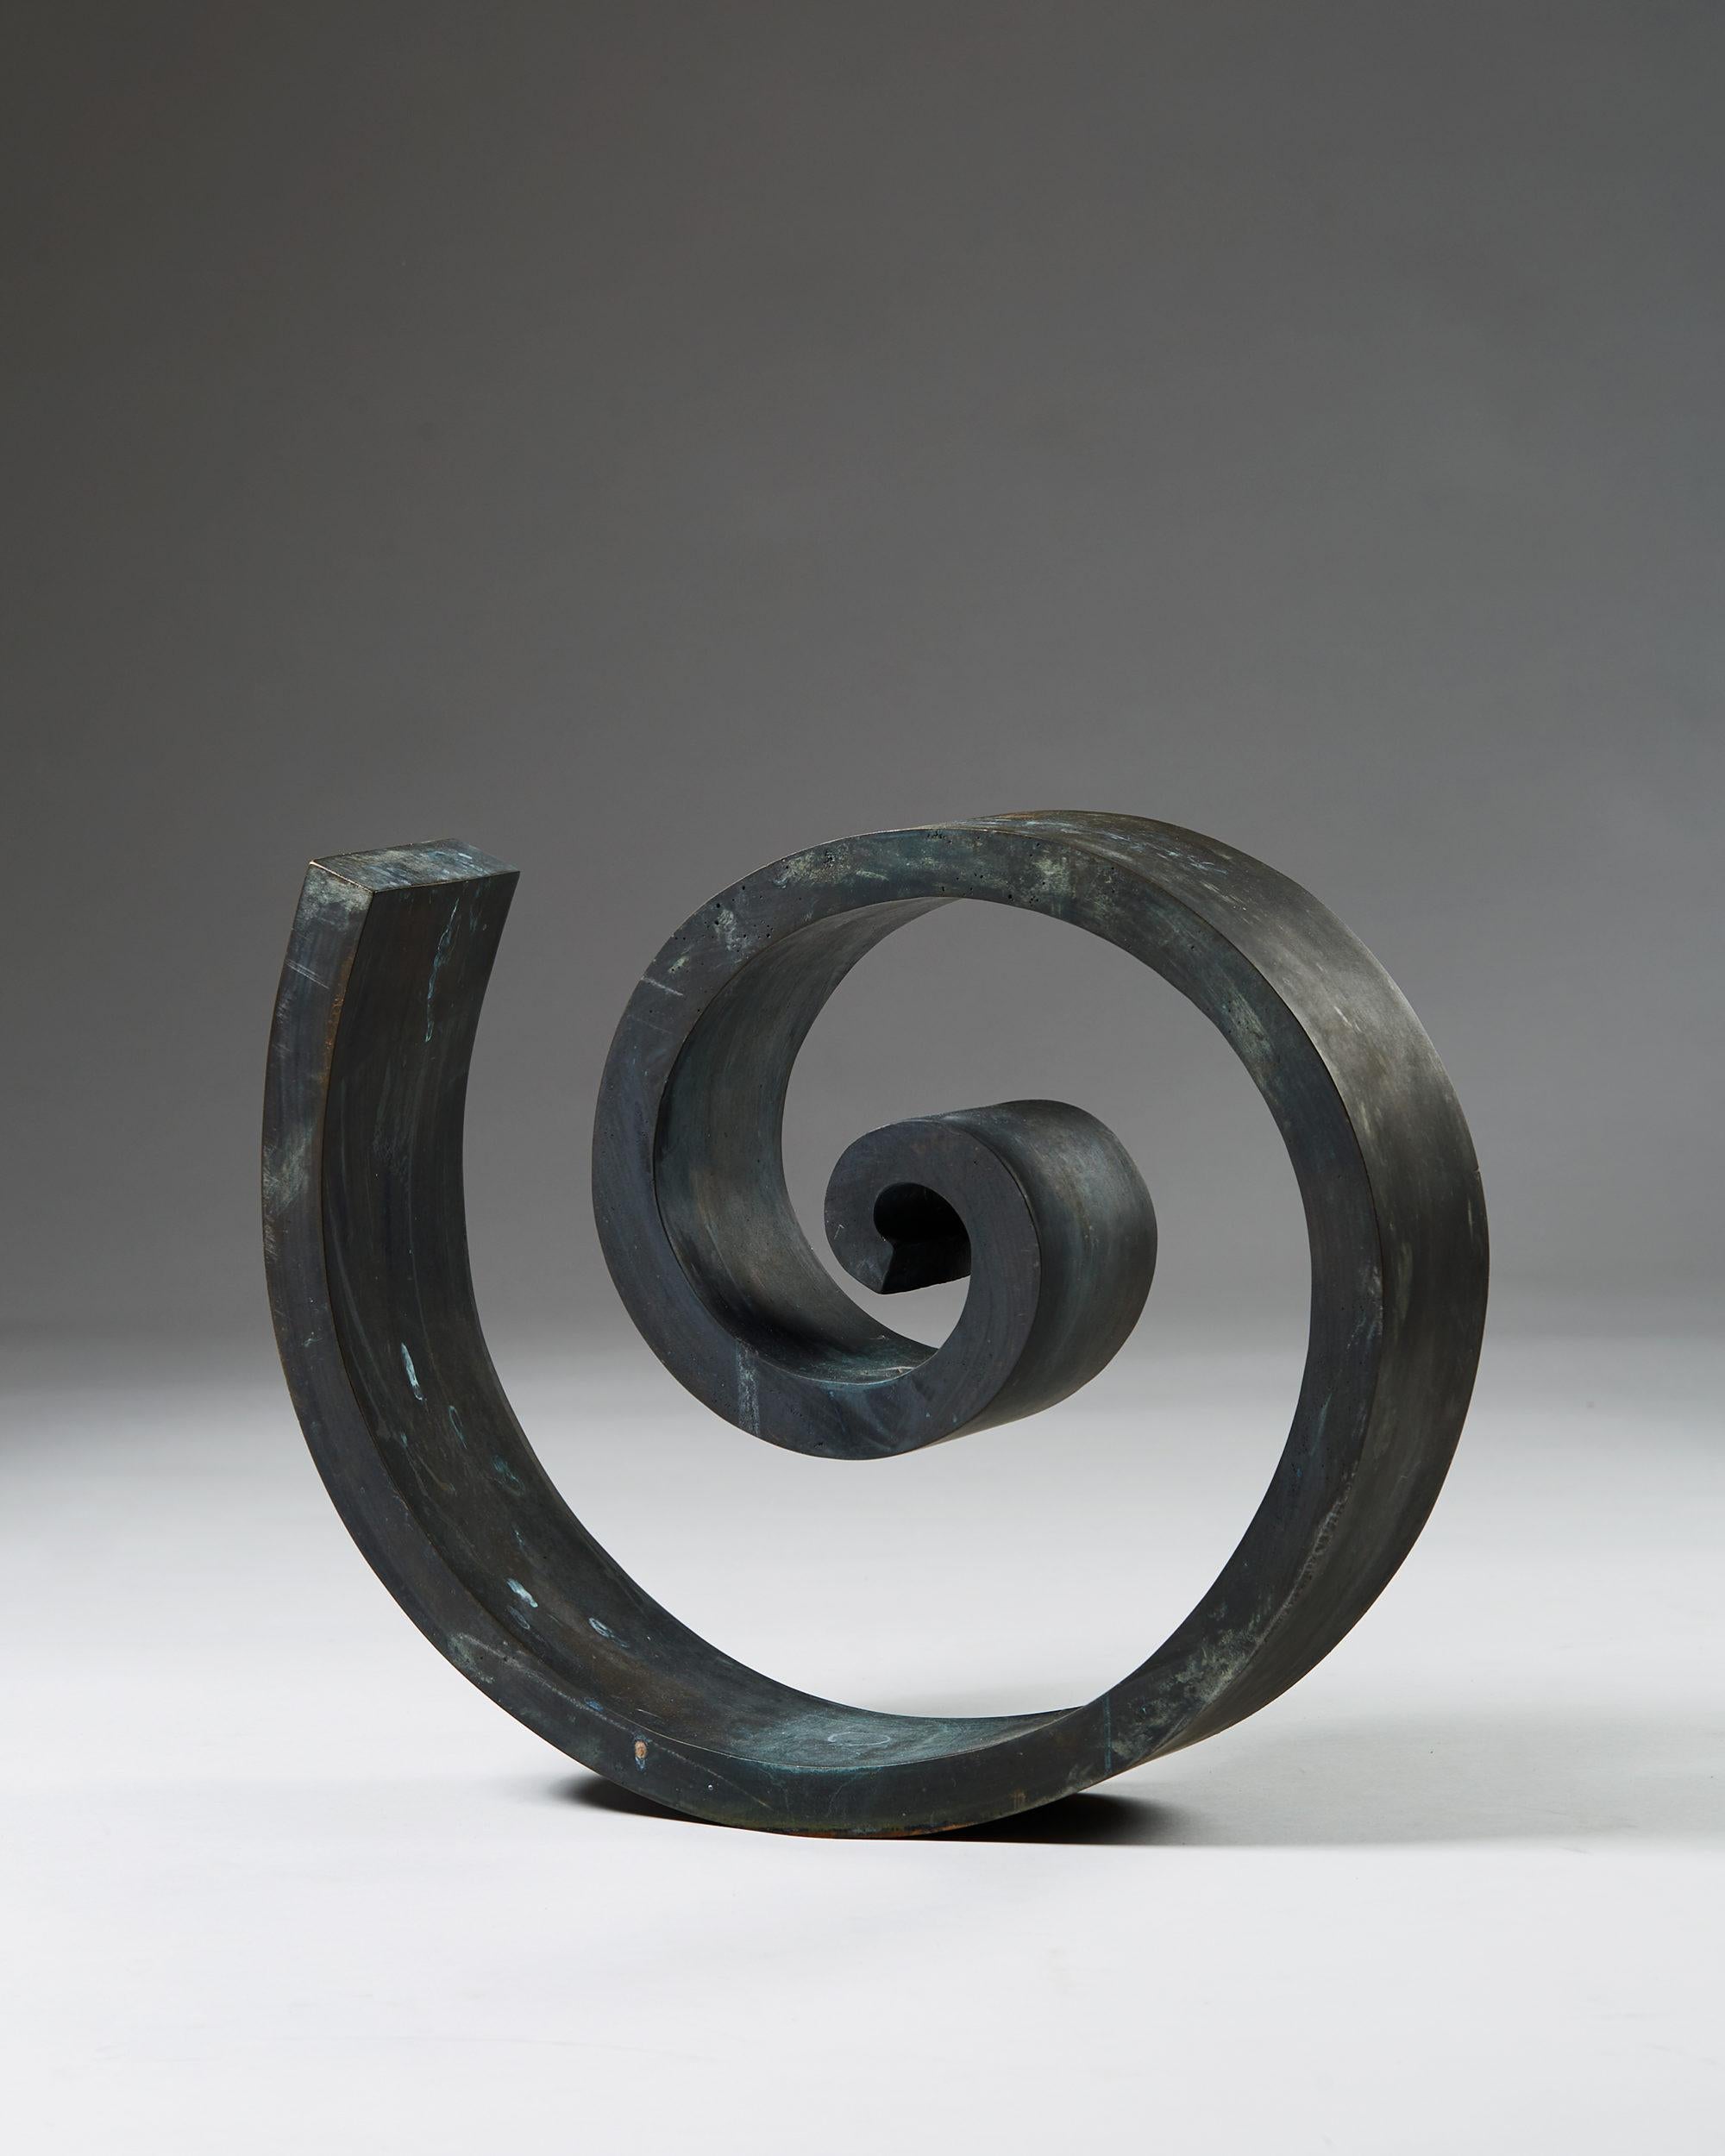 Sculpture by Nils G. Stenqvist,
Sweden. 1950's.

Bronze.

Unique.

Dimensions:
H: 38 cm / 1' 2